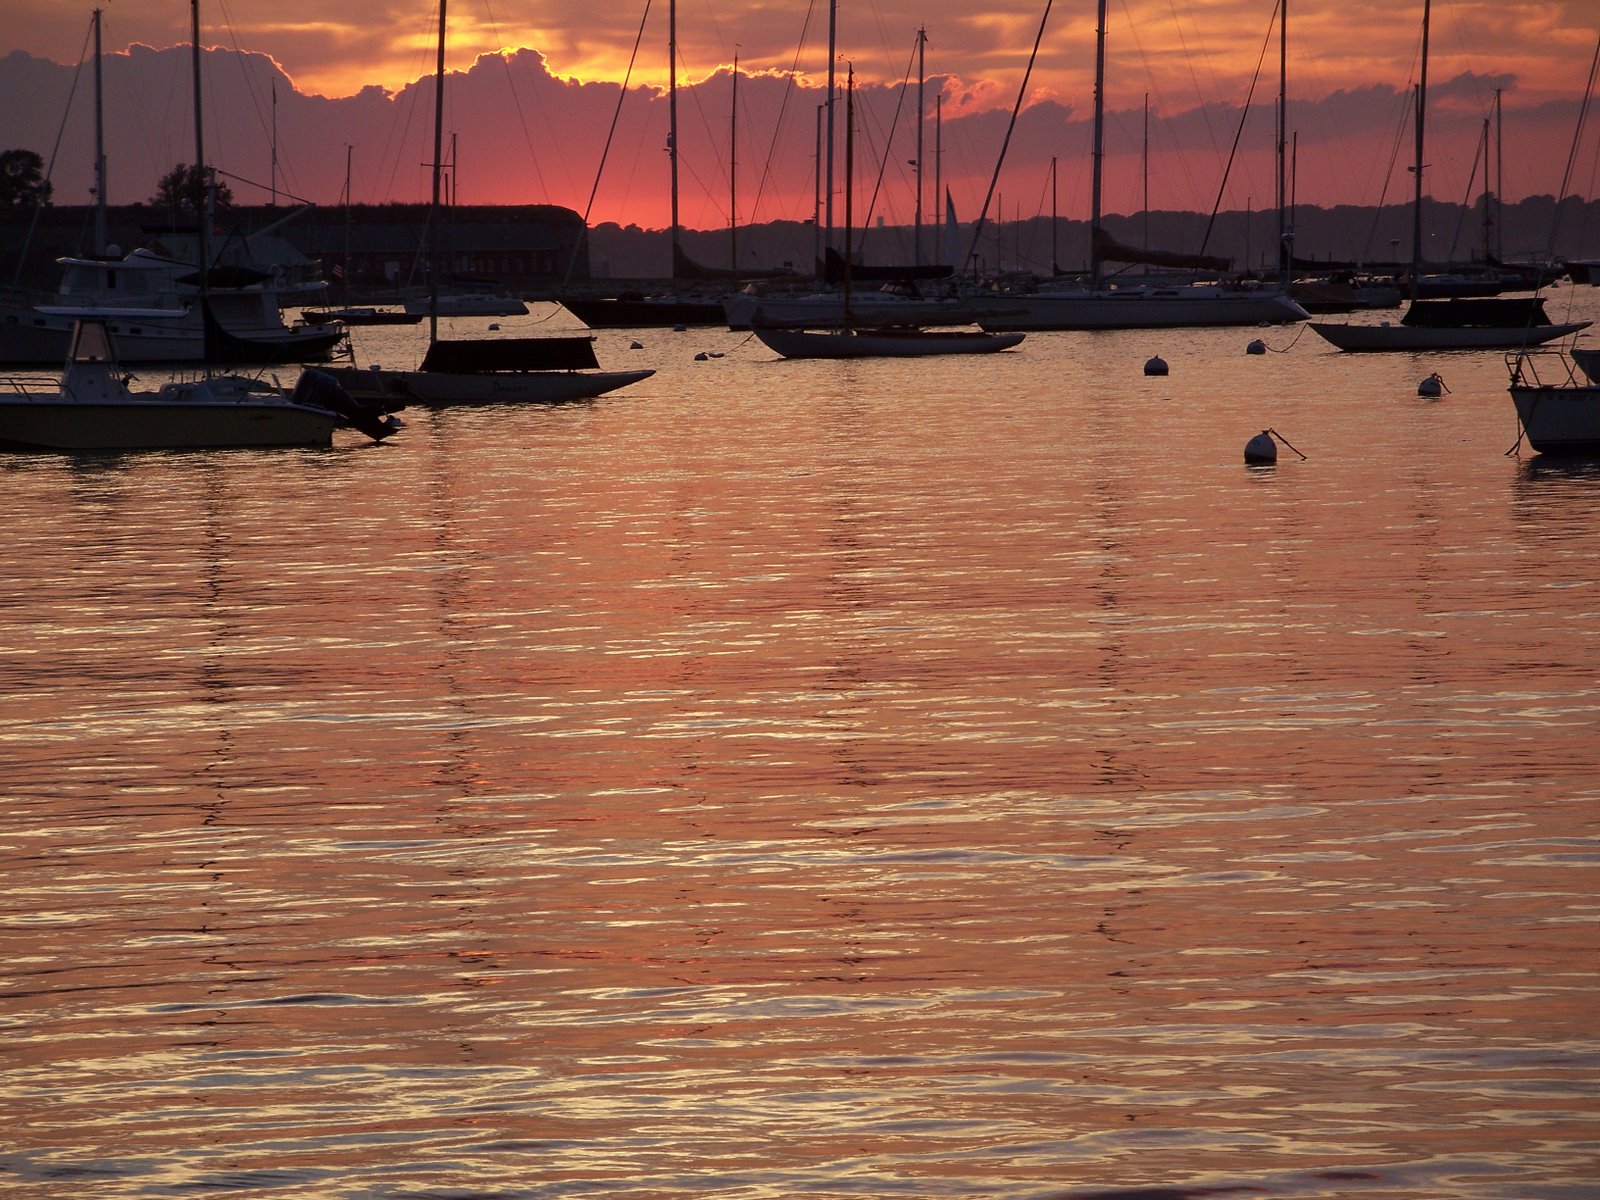 [*+Beautiful+Water+at+Sunset+w+Sailboats+moored+100_1320.JPG]